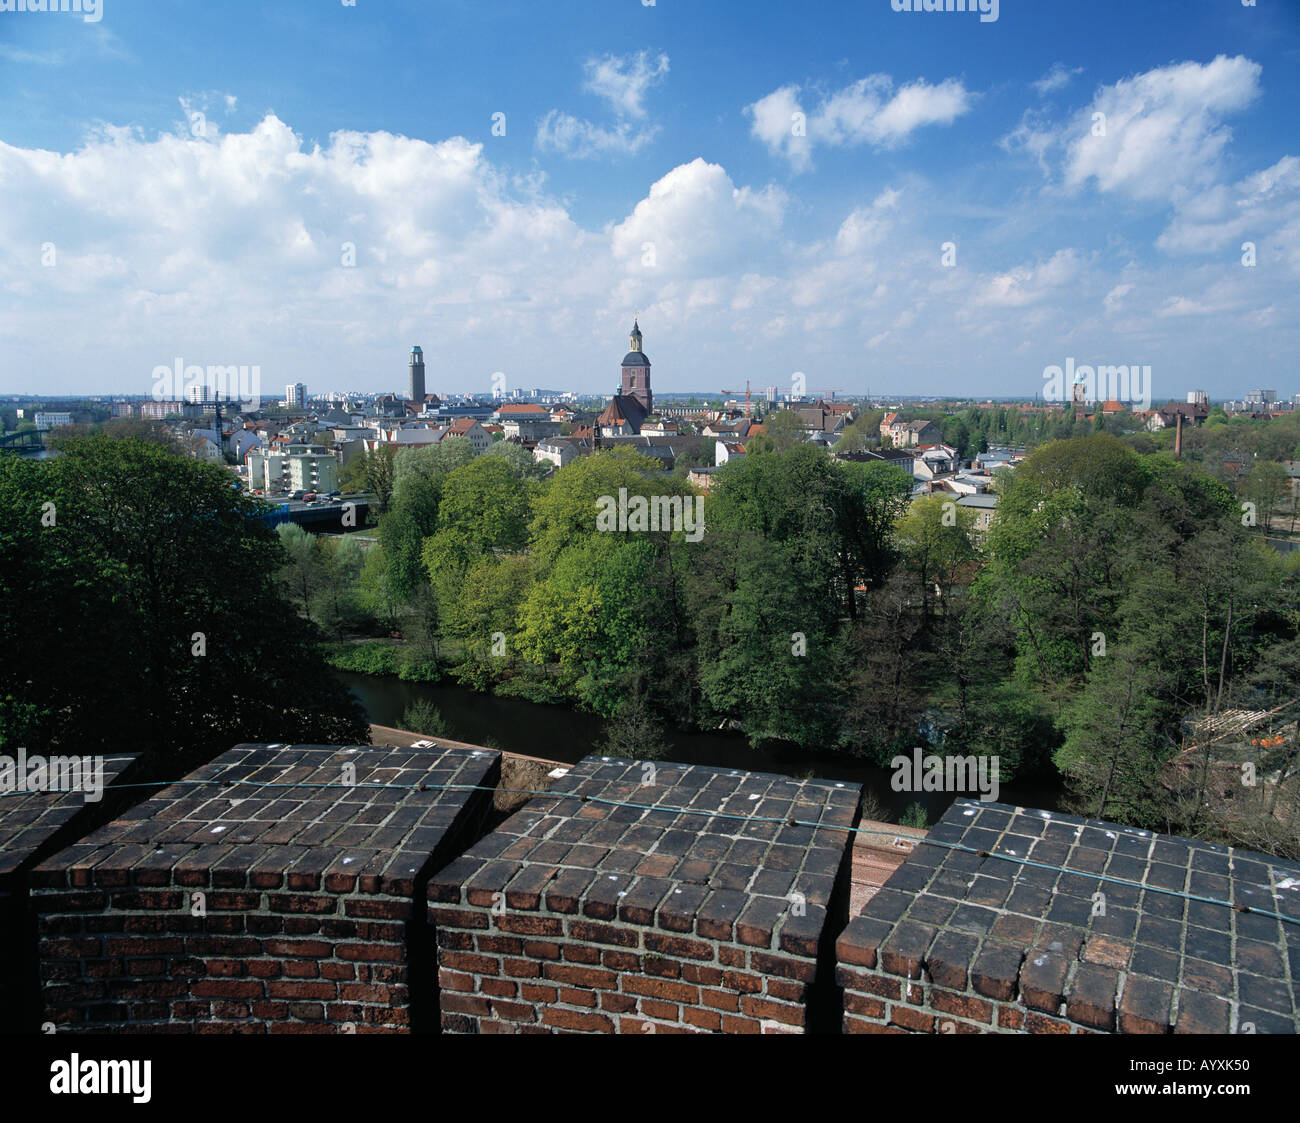 Stadtpanorama, Stadtteil Spandau, Zinnen der Zitadelle, Rathaus, Nikolaikirche, Berlin-Spandau Stock Photo